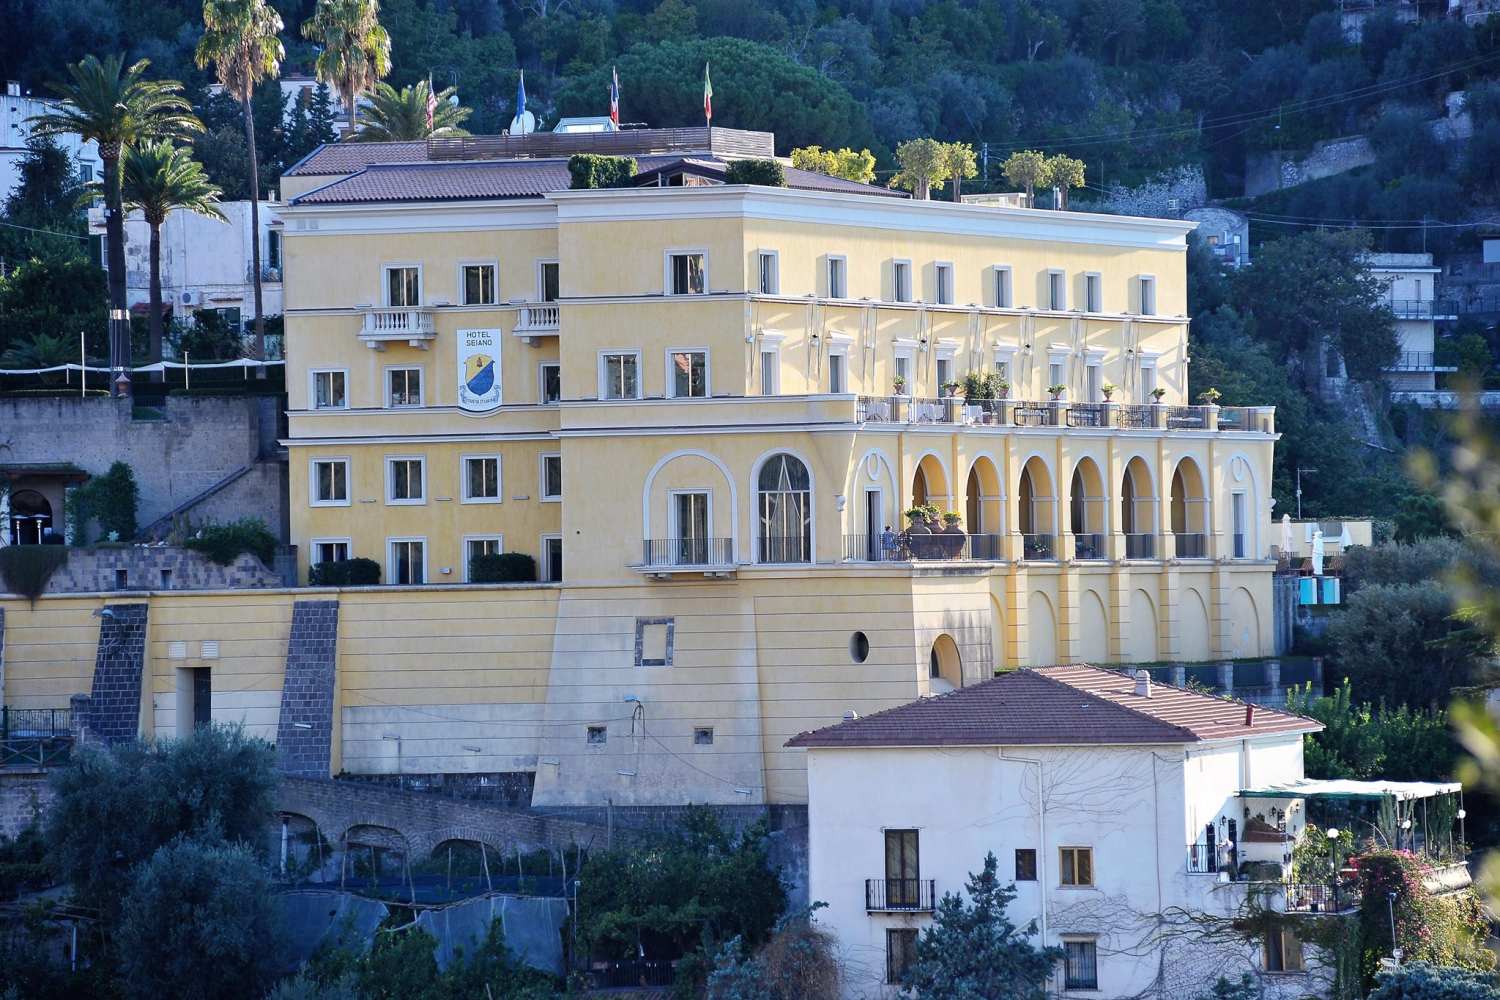 Grand Hotel Angiolieri Vico Equense - Italy